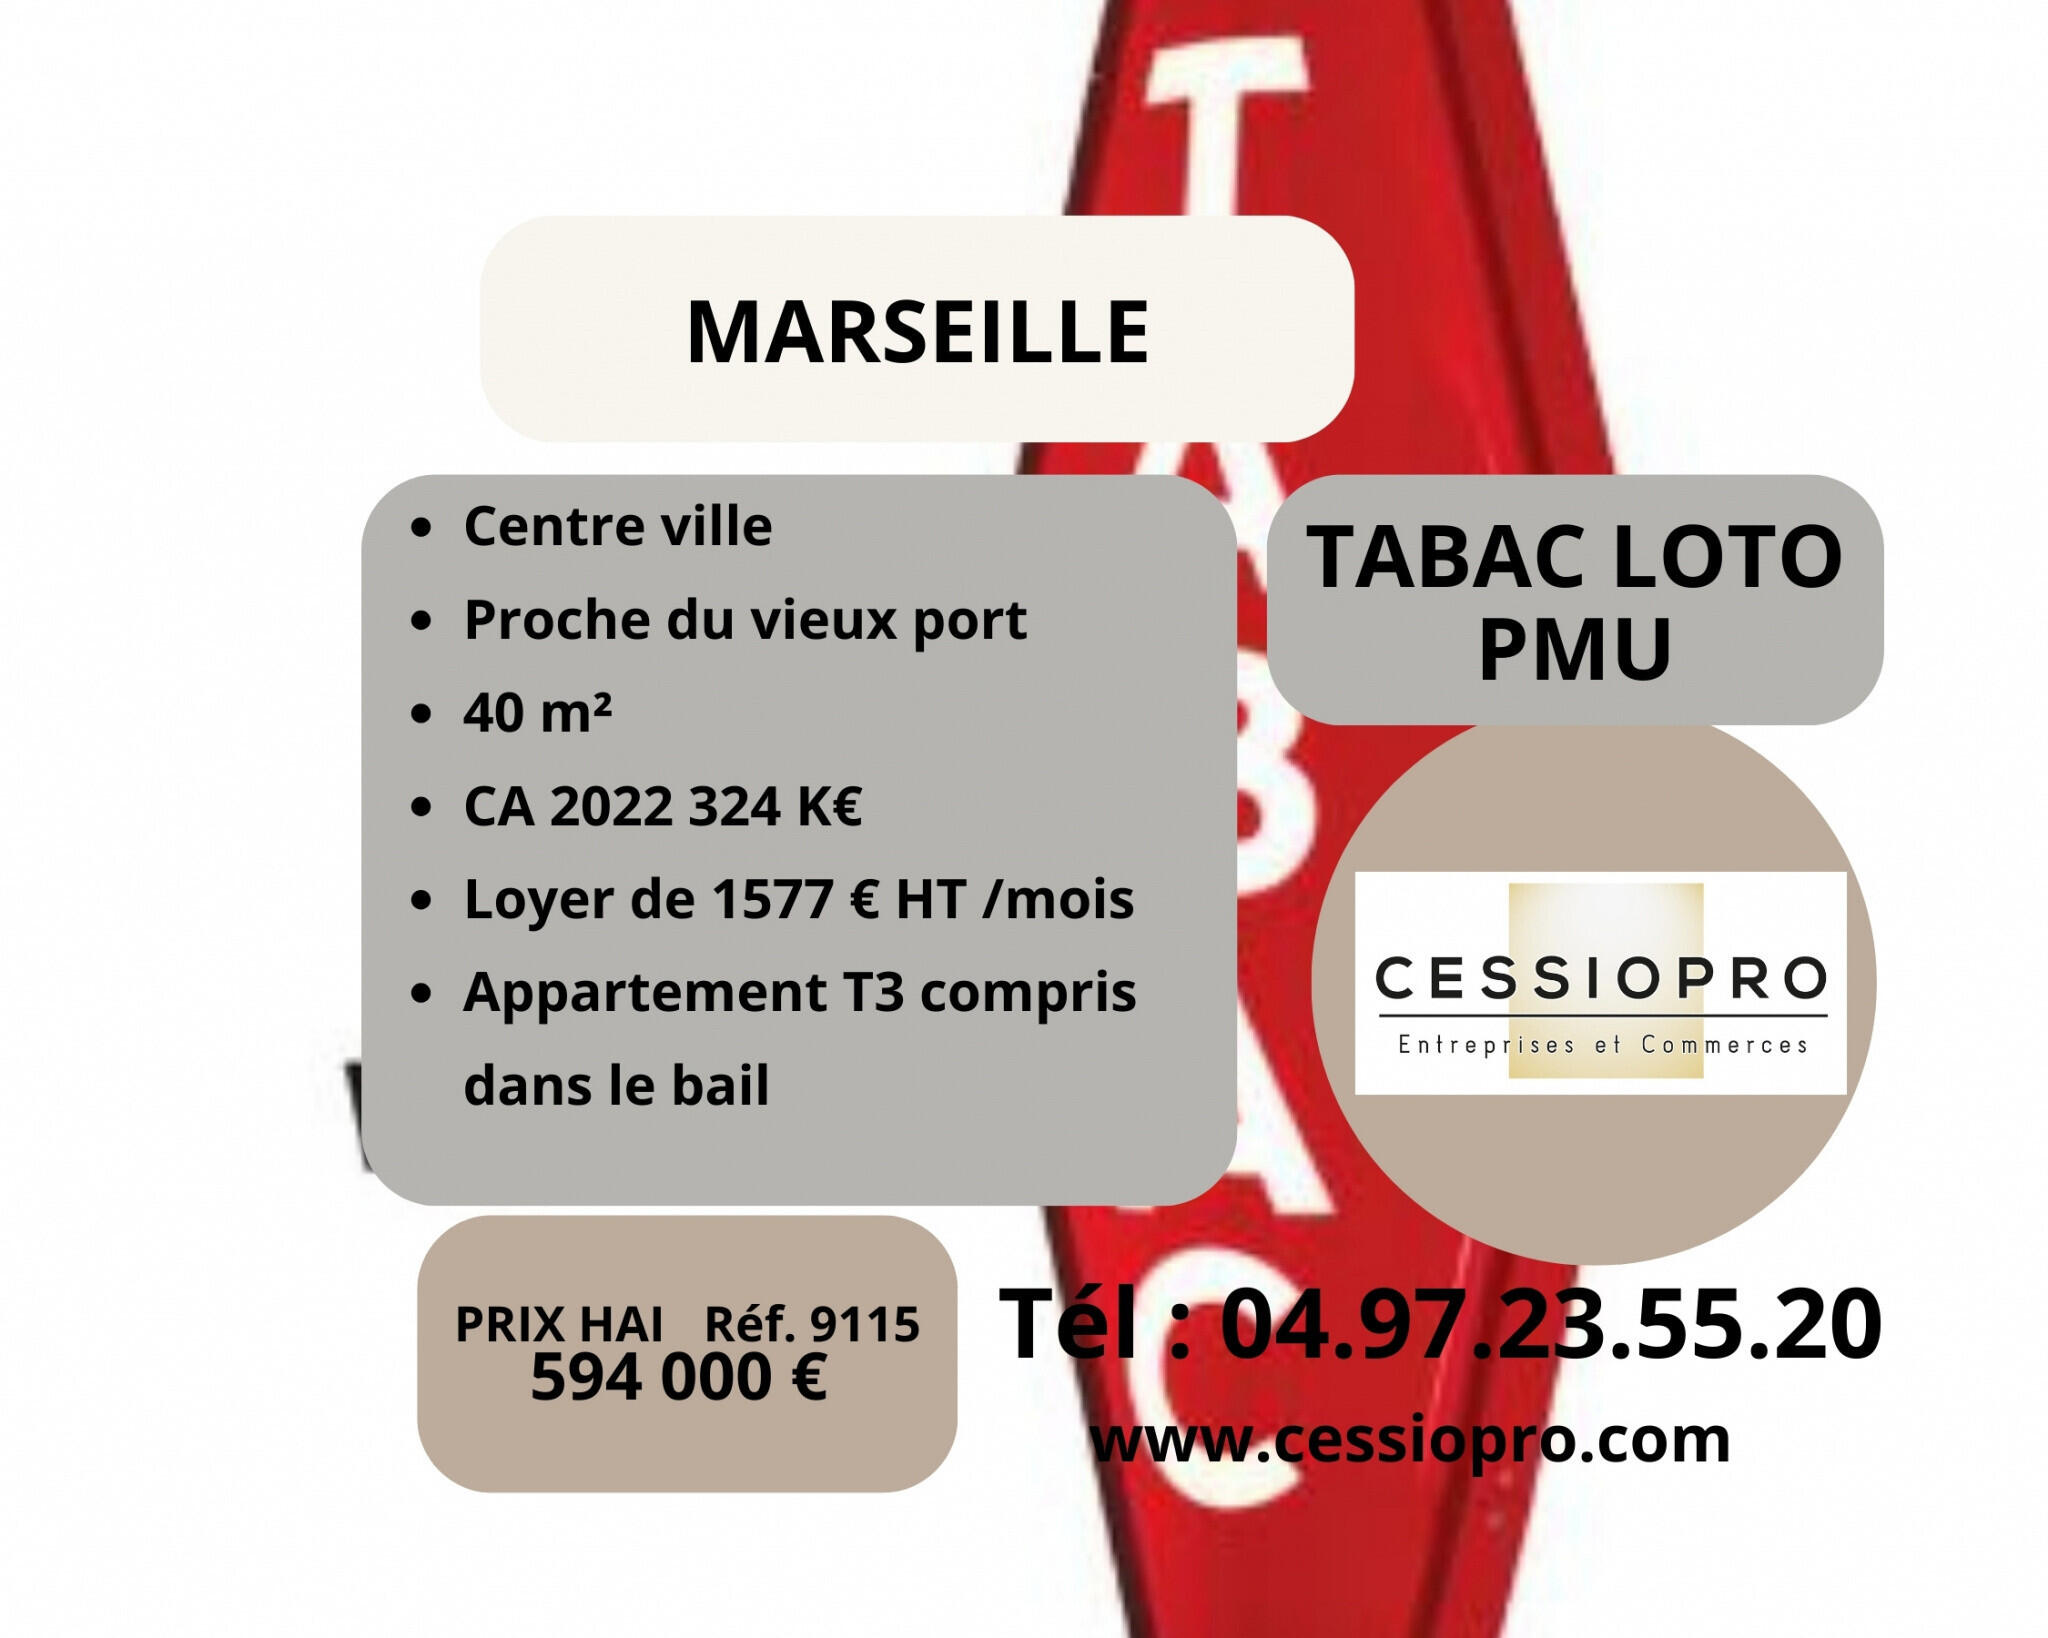 Vend FDC tabac loto PMU appart centre Marseille